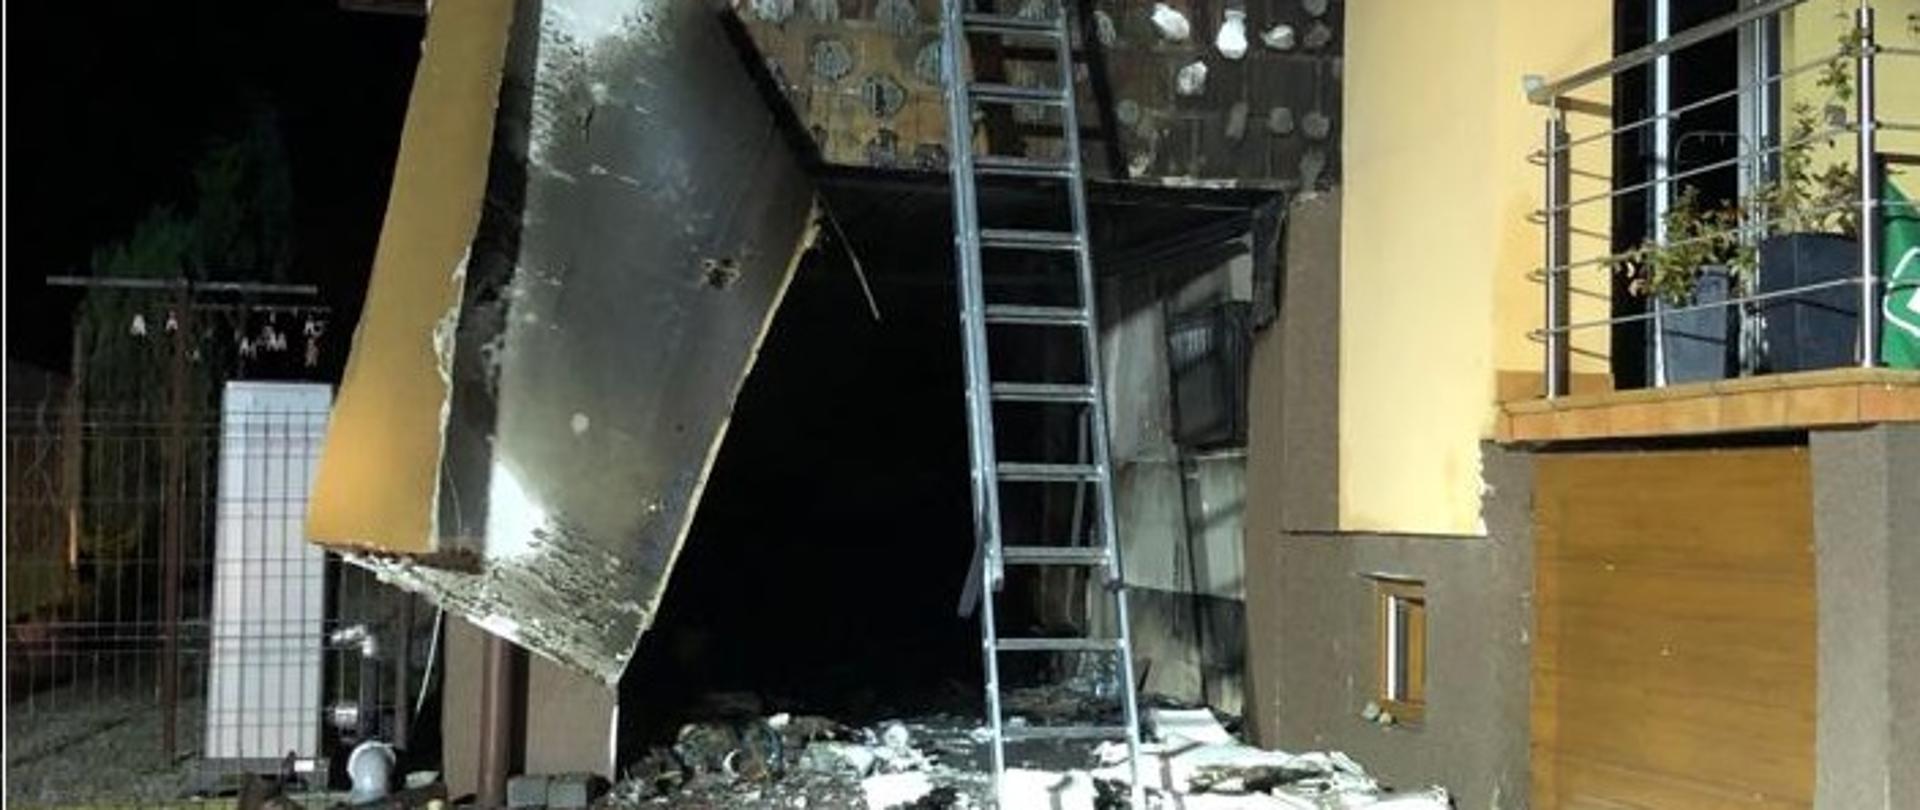 Zdjęcie przedstawia garaż w budynku mieszkalnym zniszczony przez pożar. 